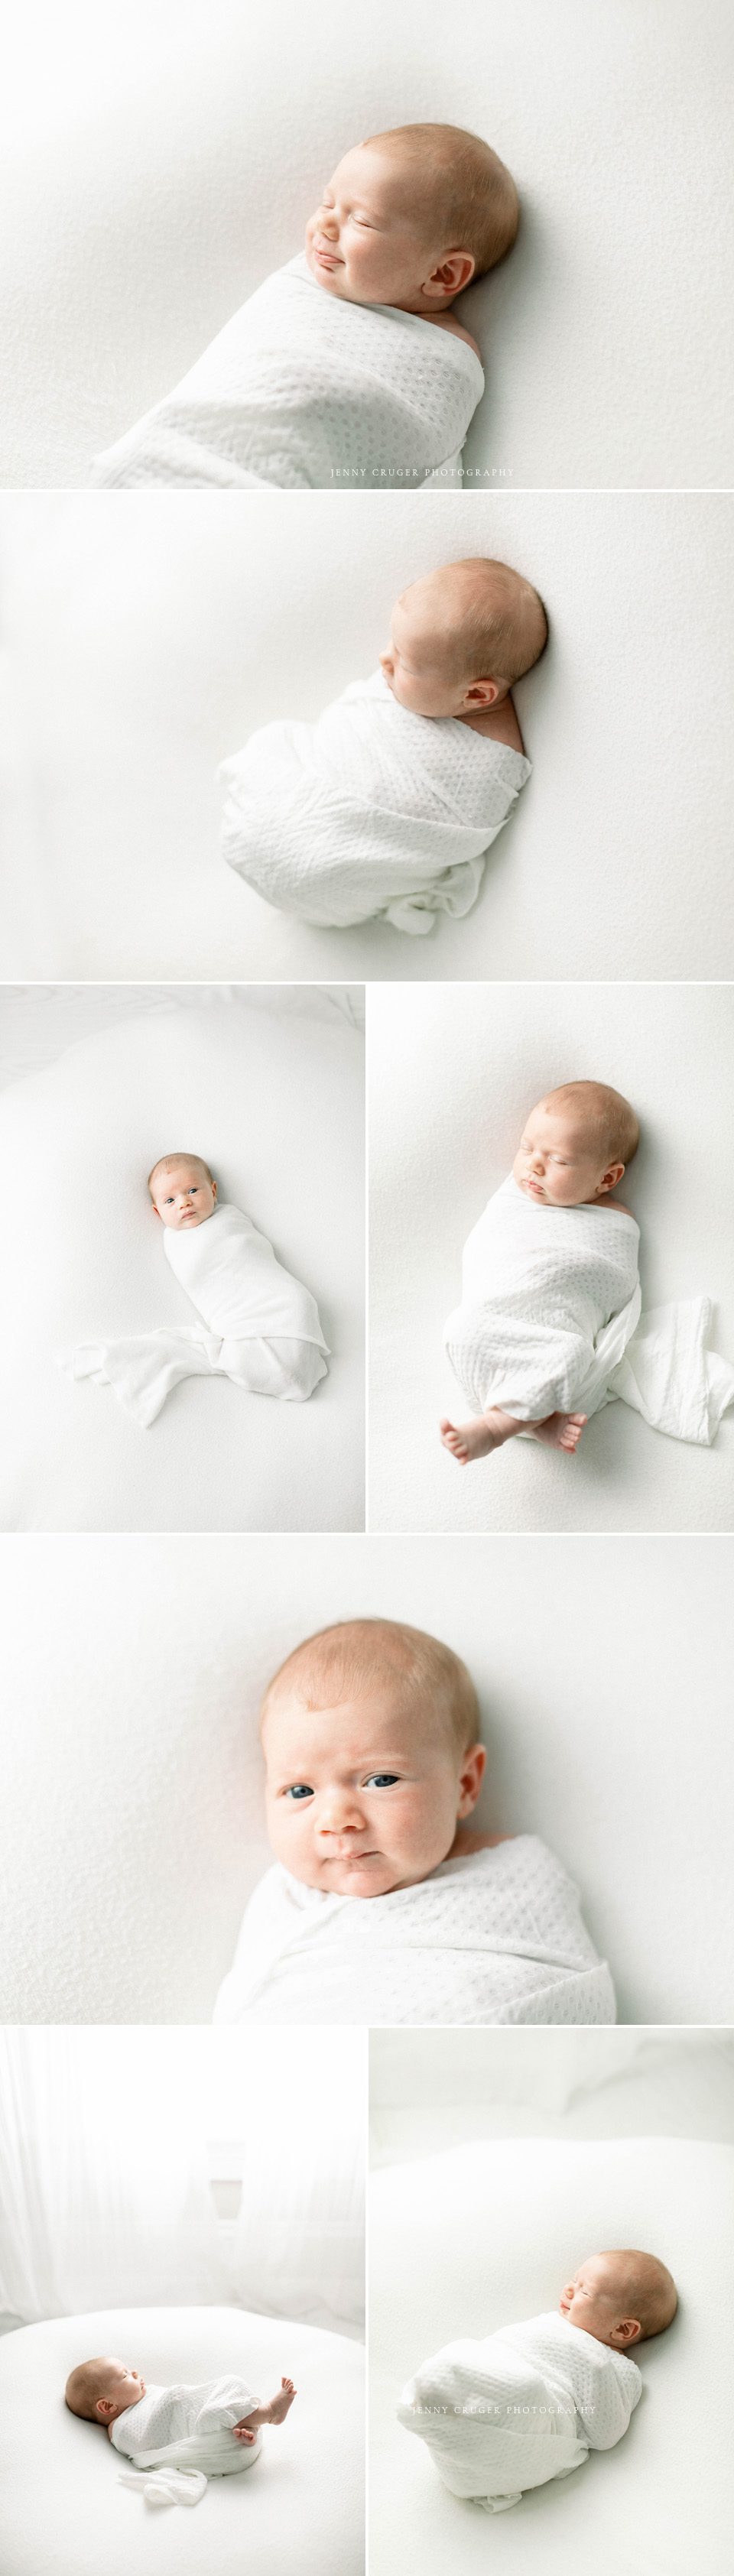 newborn baby on white blanket